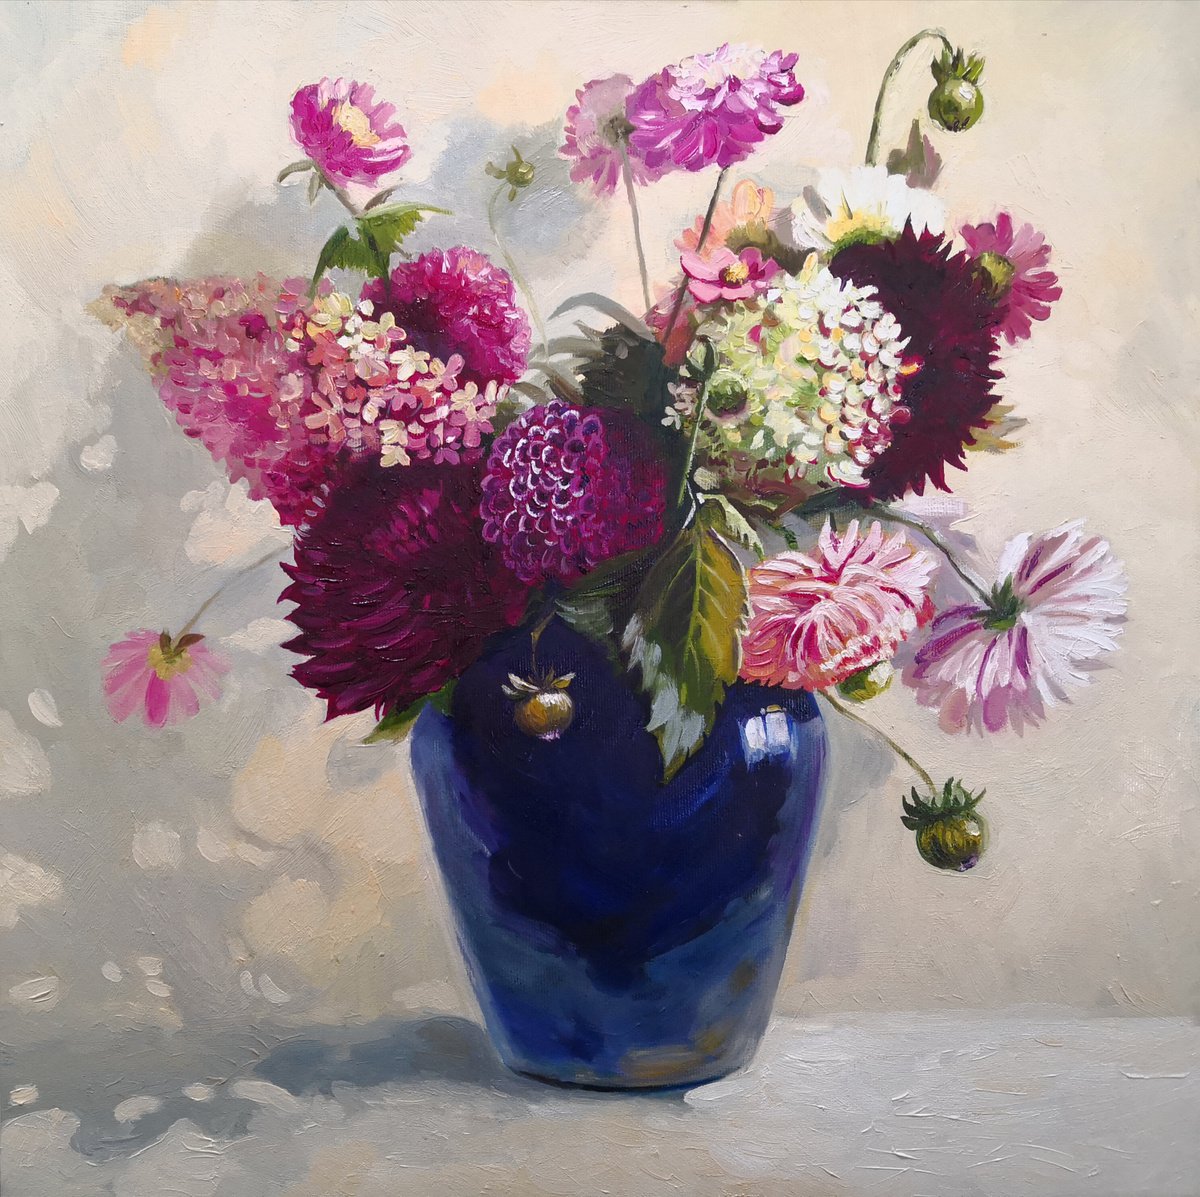 Flowers Bouquet in a blue glass vase still life by Jane Lantsman